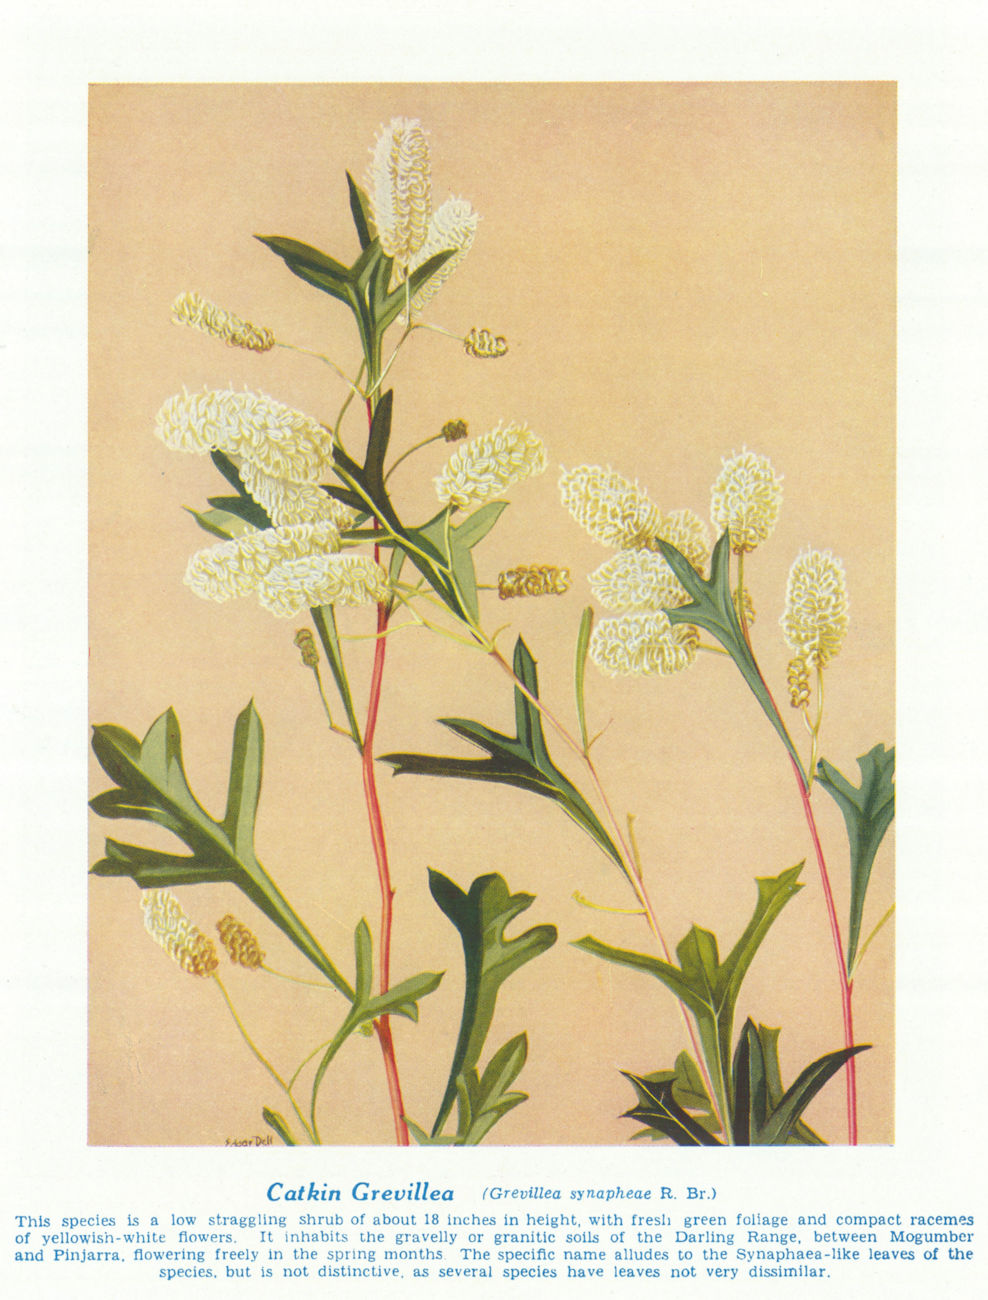 Catkin Grevillea (Grevillea synapheae). West Australian Wild Flowers 1950